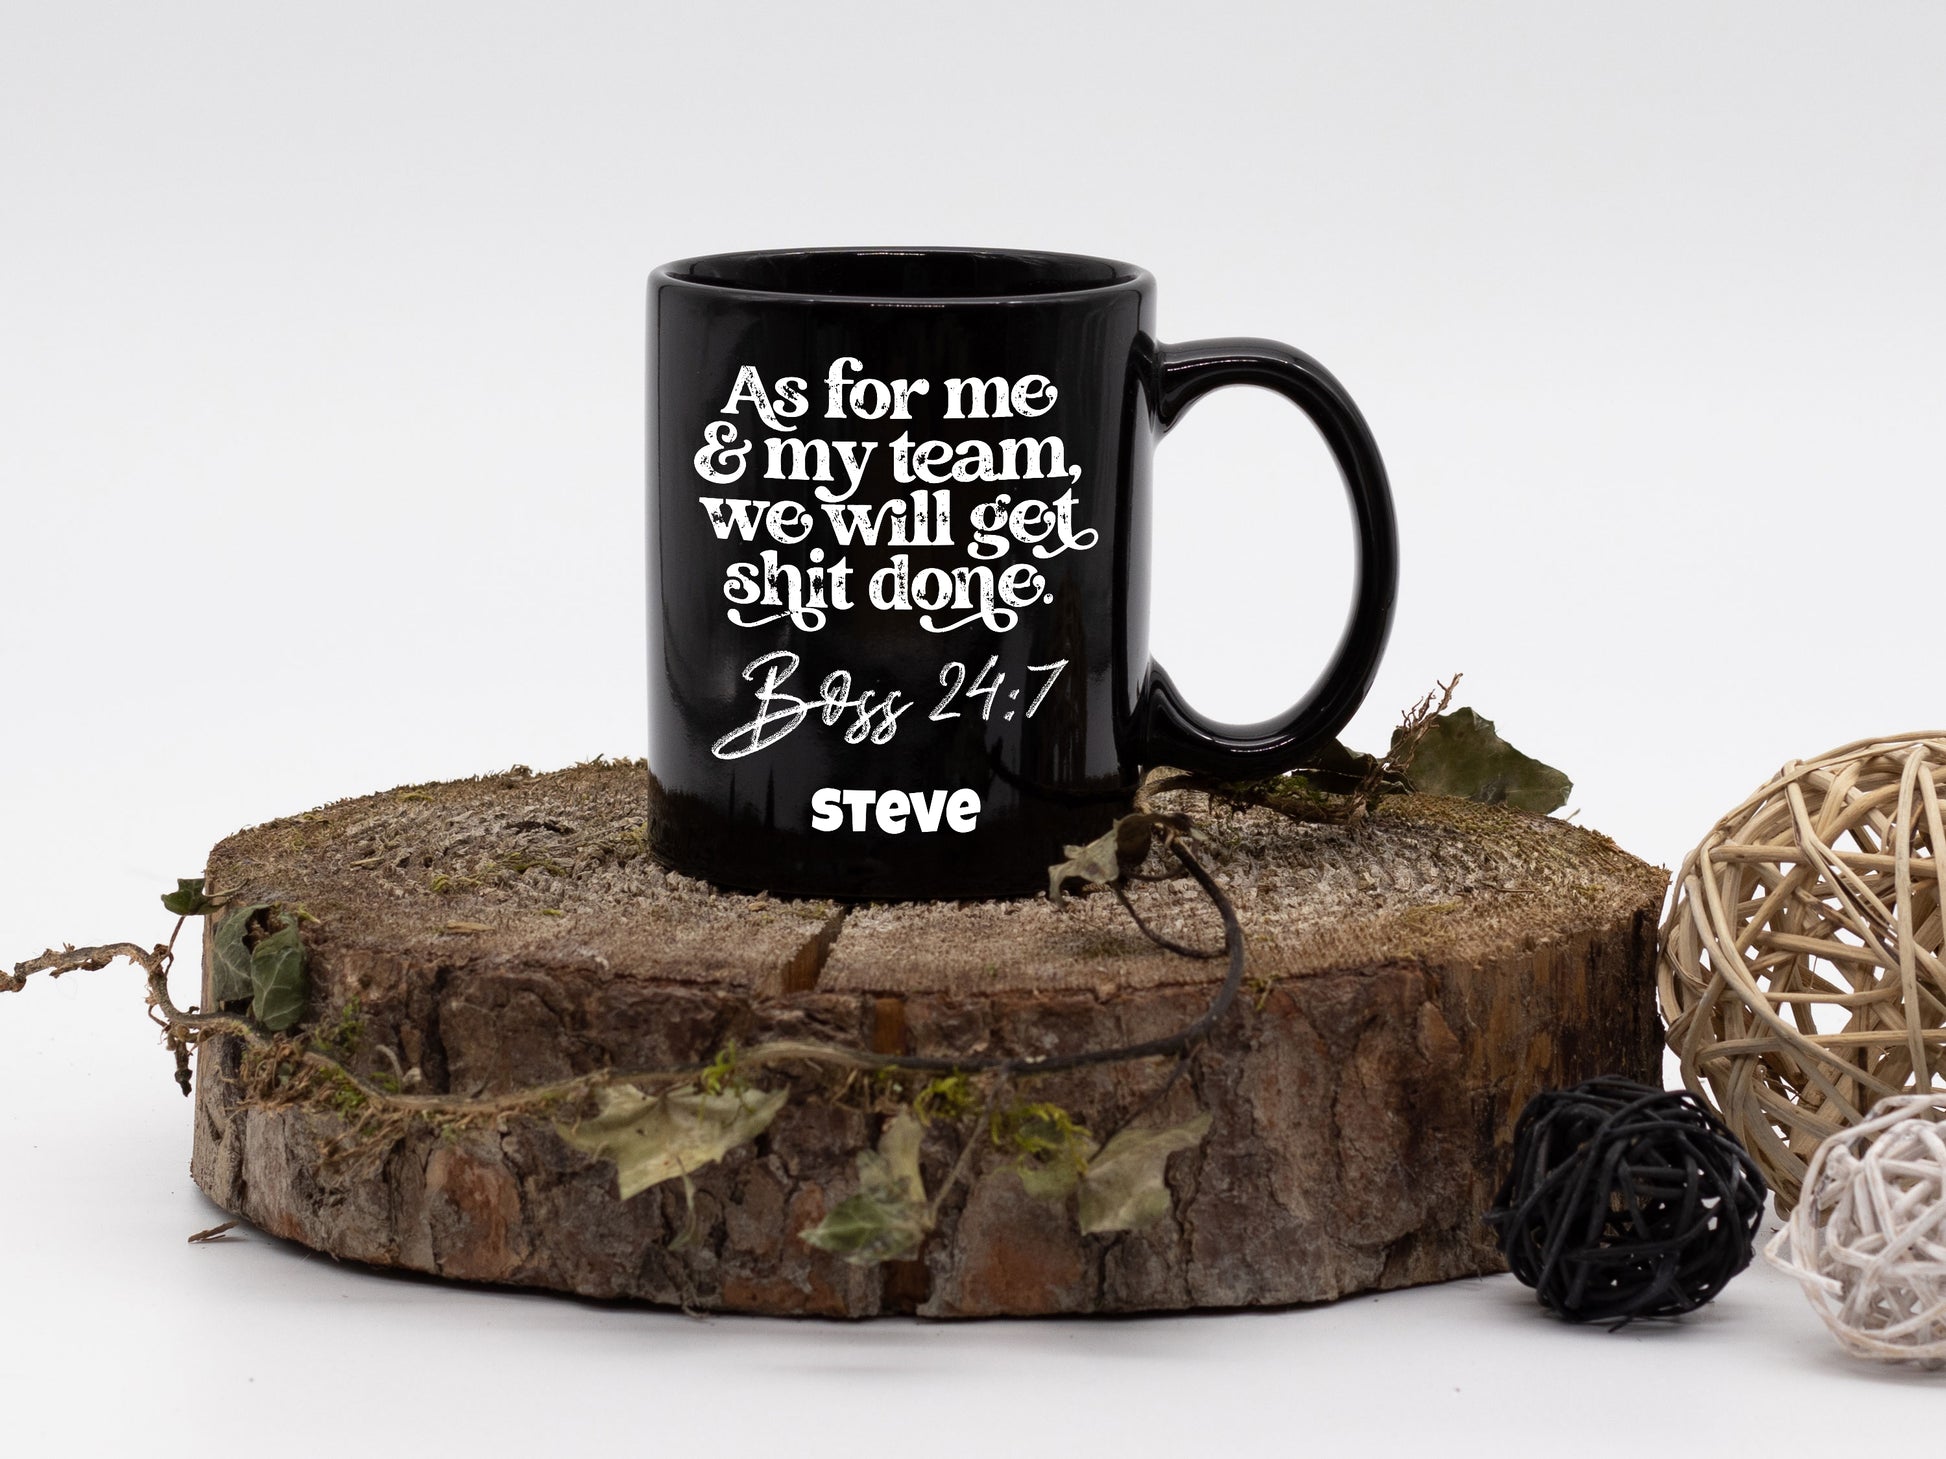 Coffee Mug, Printed Mug, Coffee Cup, Tea Mug, Graphic Mug, Me And My Team - Mug Project